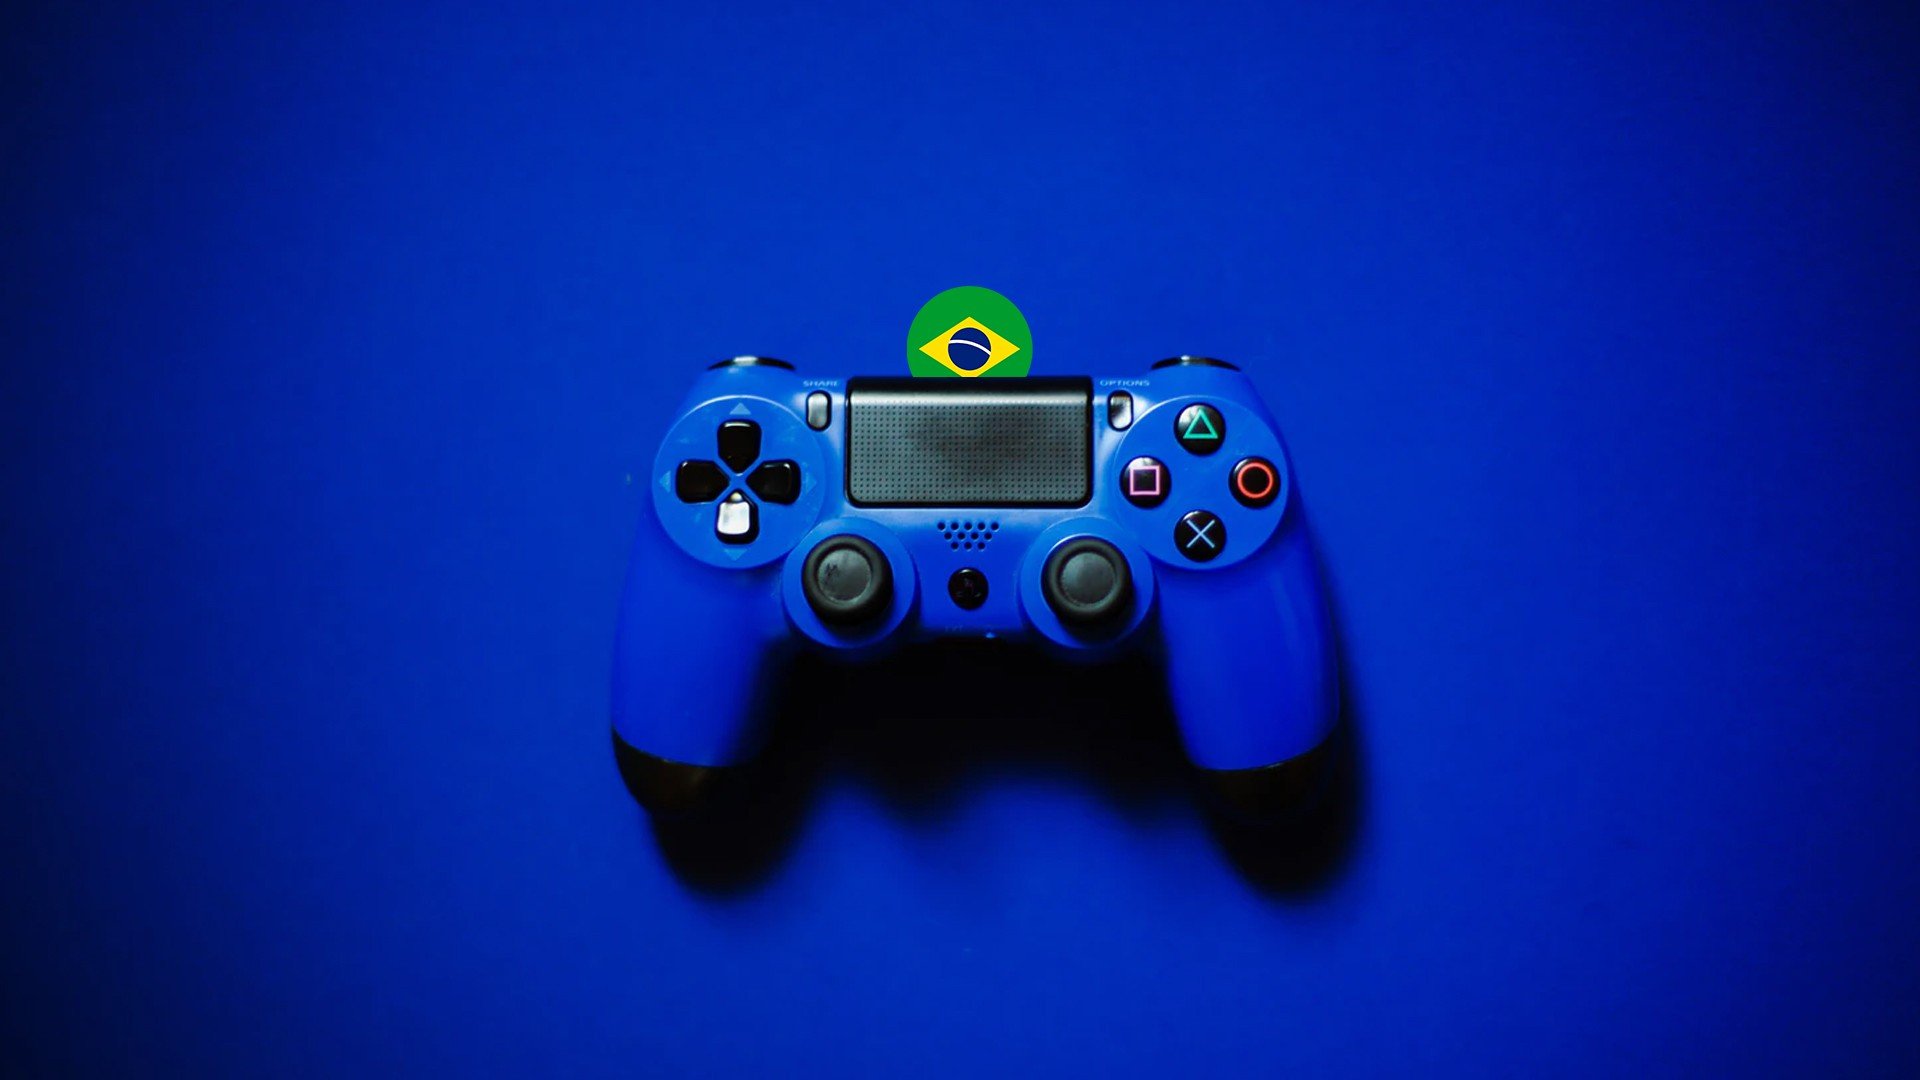 Transtorno de jogo pela internet: 1 a cada 4 adolescentes brasileiros  enfrenta o problema